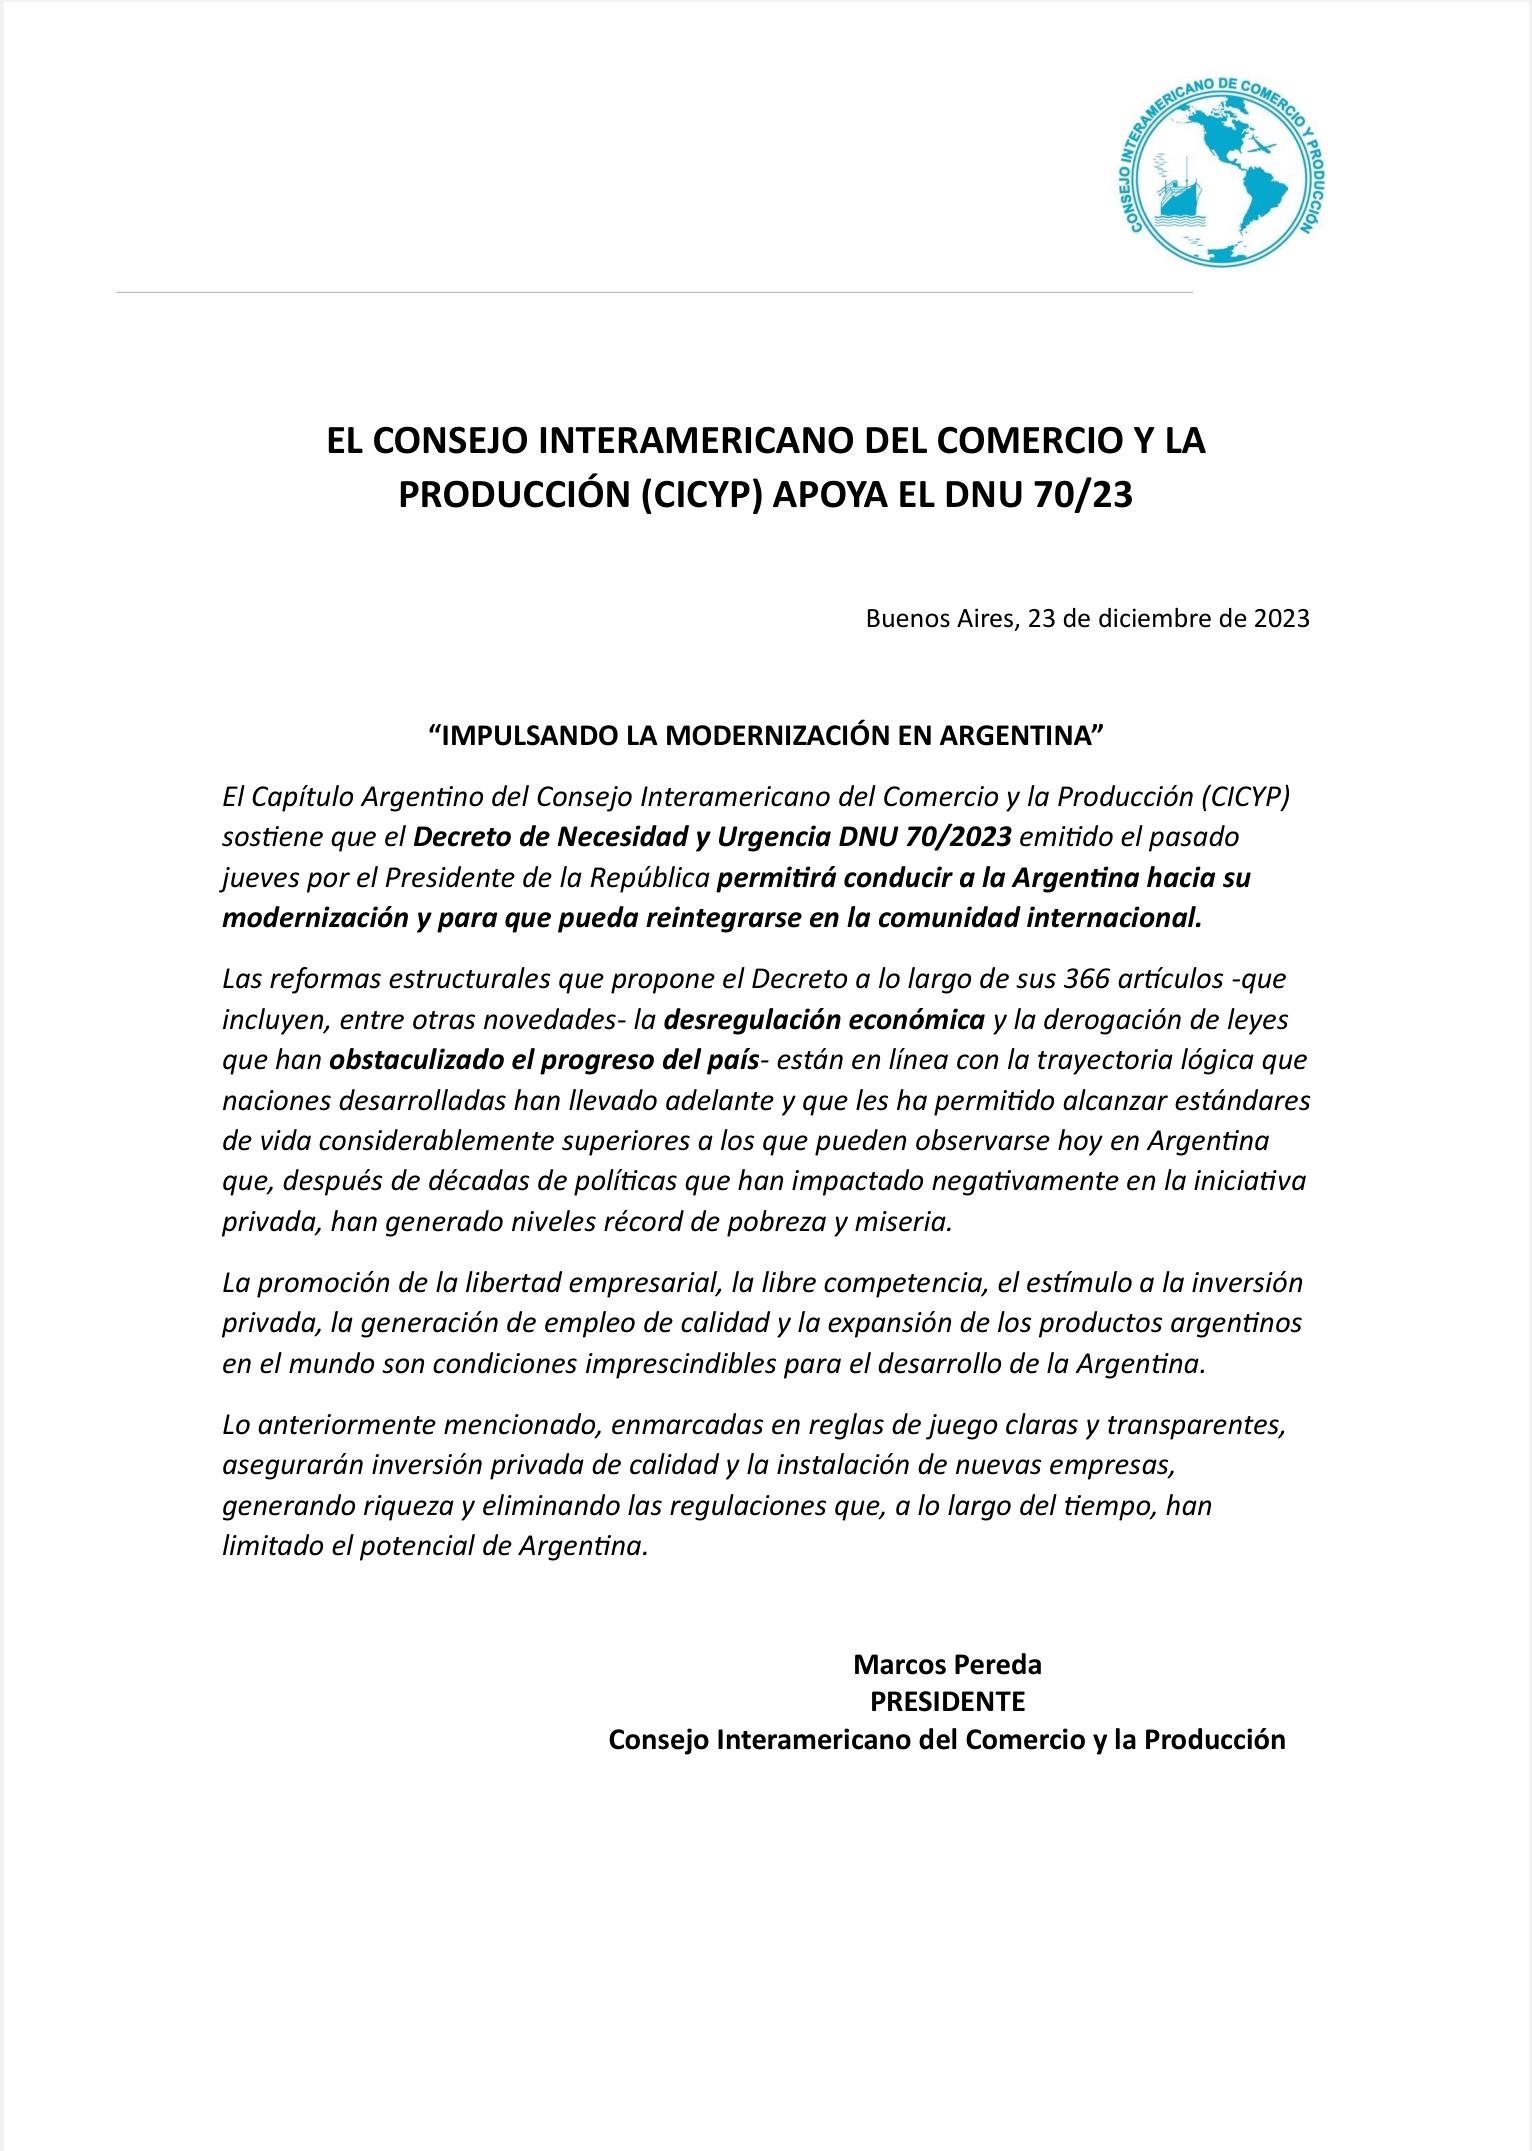 Декрет Милея получил одобрение Межамериканского совета по торговле и производству (CICYP)